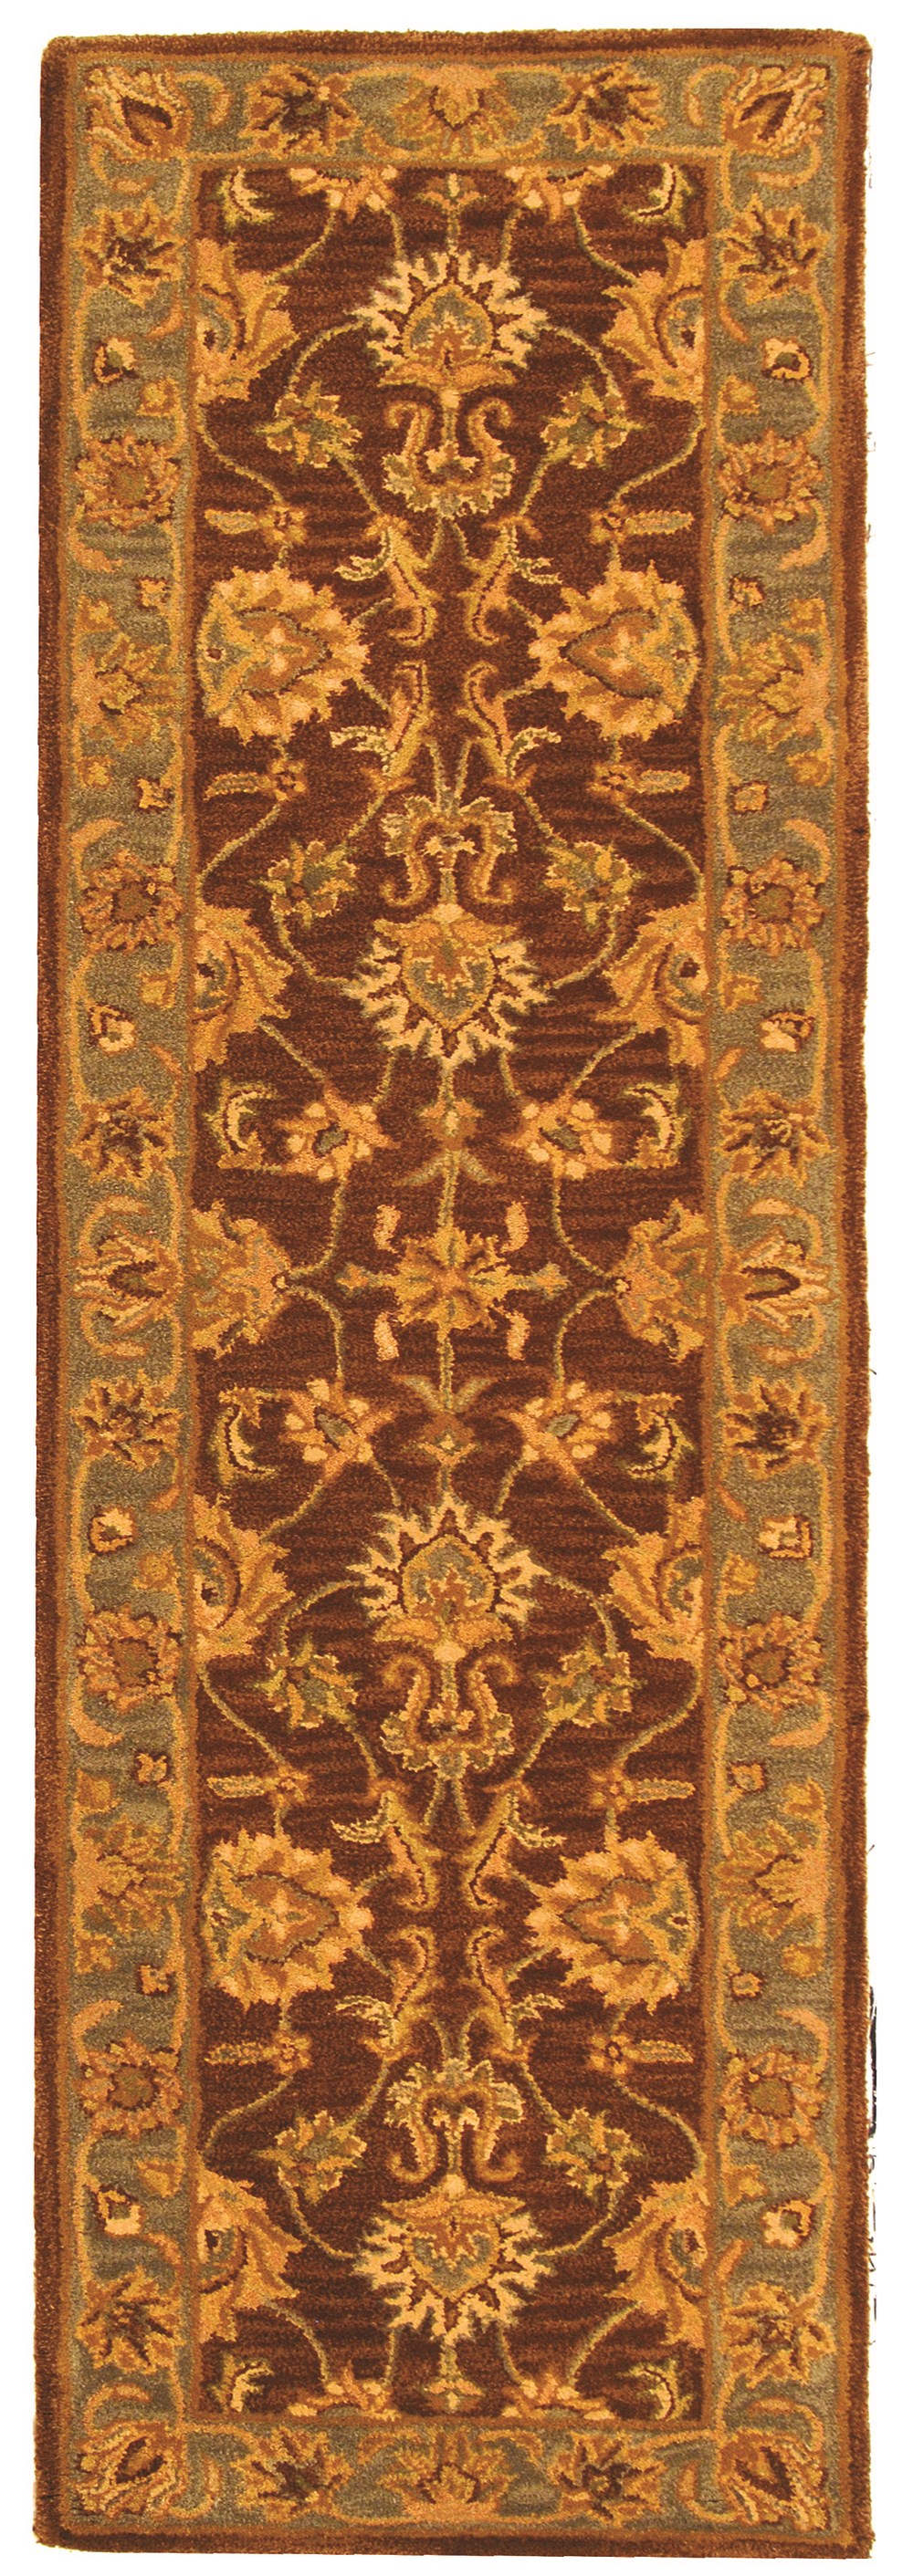 SAFAVIEH Heritage Regis Traditional Wool Runner Rug, Brown/Blue, 2'3" x 12' - image 1 of 4